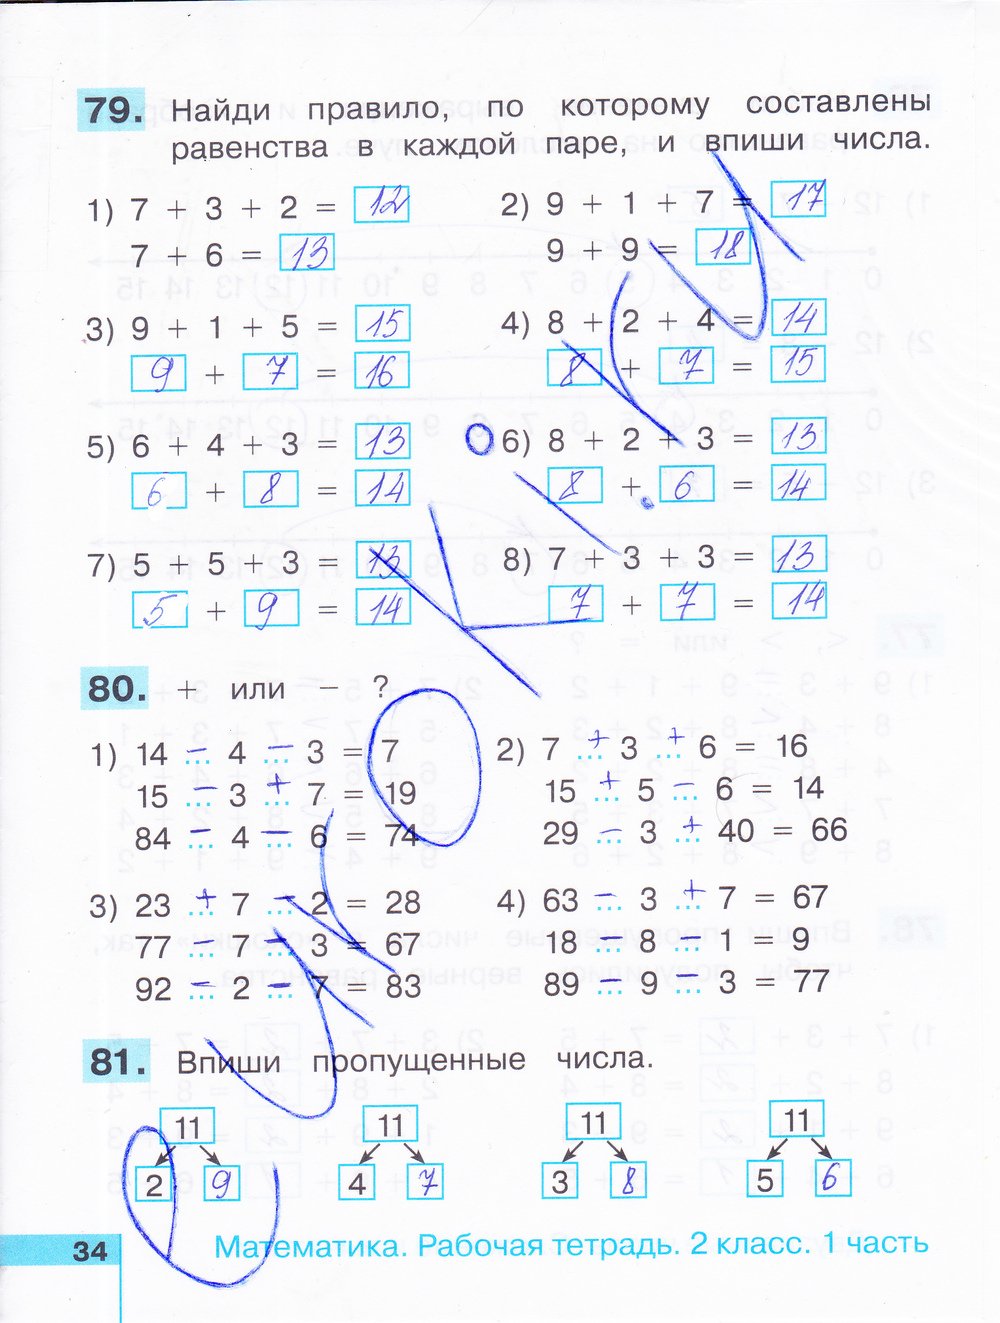 Математика 1 класс страница 34 ответы. Рабочая тетрадь по математике 1 2 часть стр 34. Рабочая тетрадь по математике 1 класс 2 часть стр 34.